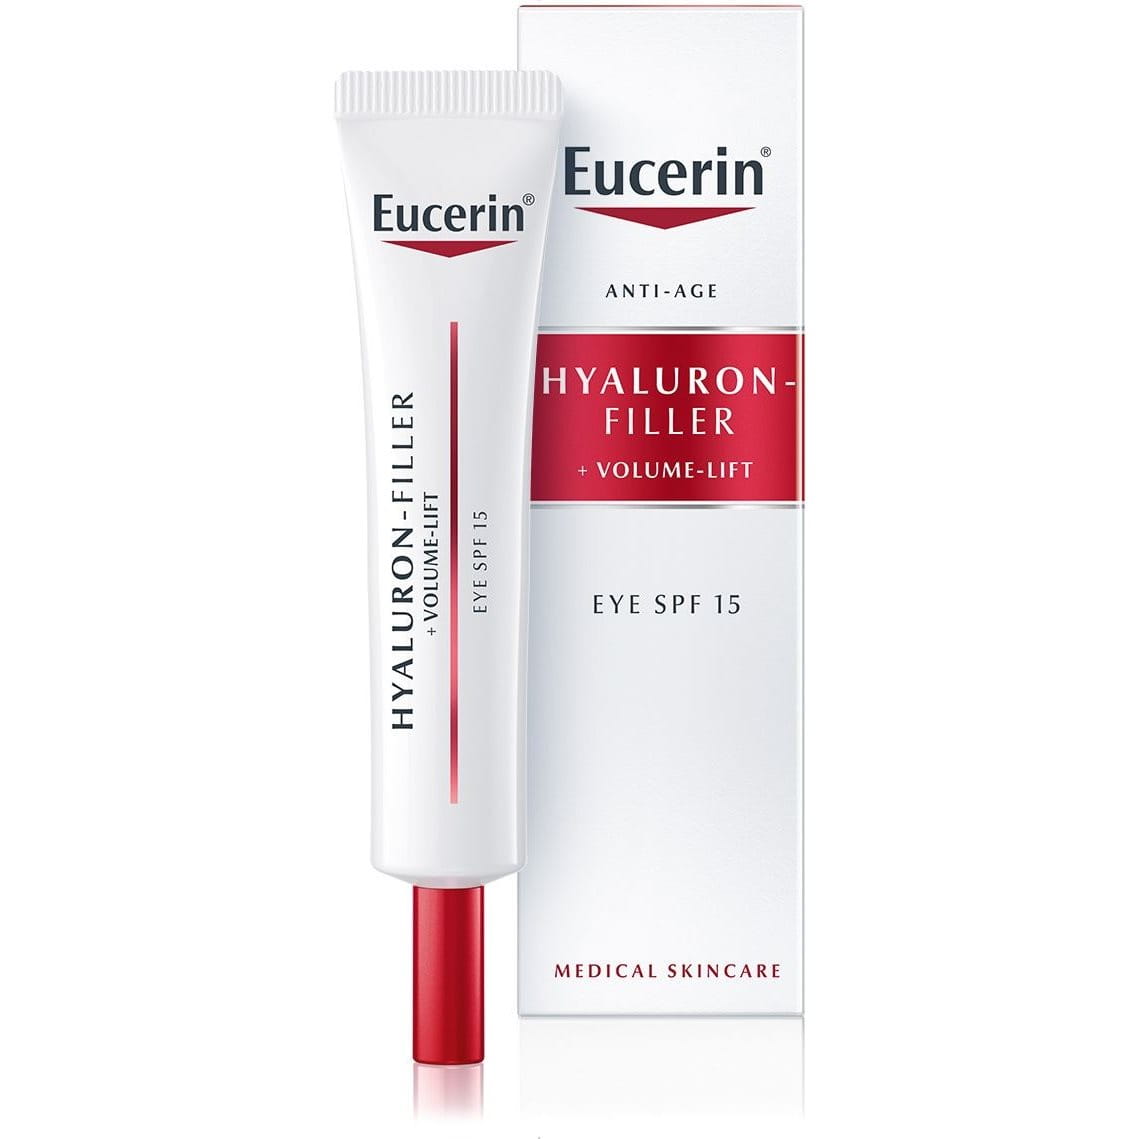 Eucerin Hyaluron-Filler + Volume-Lift Крем для восстановления контура вокруг глаз c SPF 15 c лифтинг-эффектом